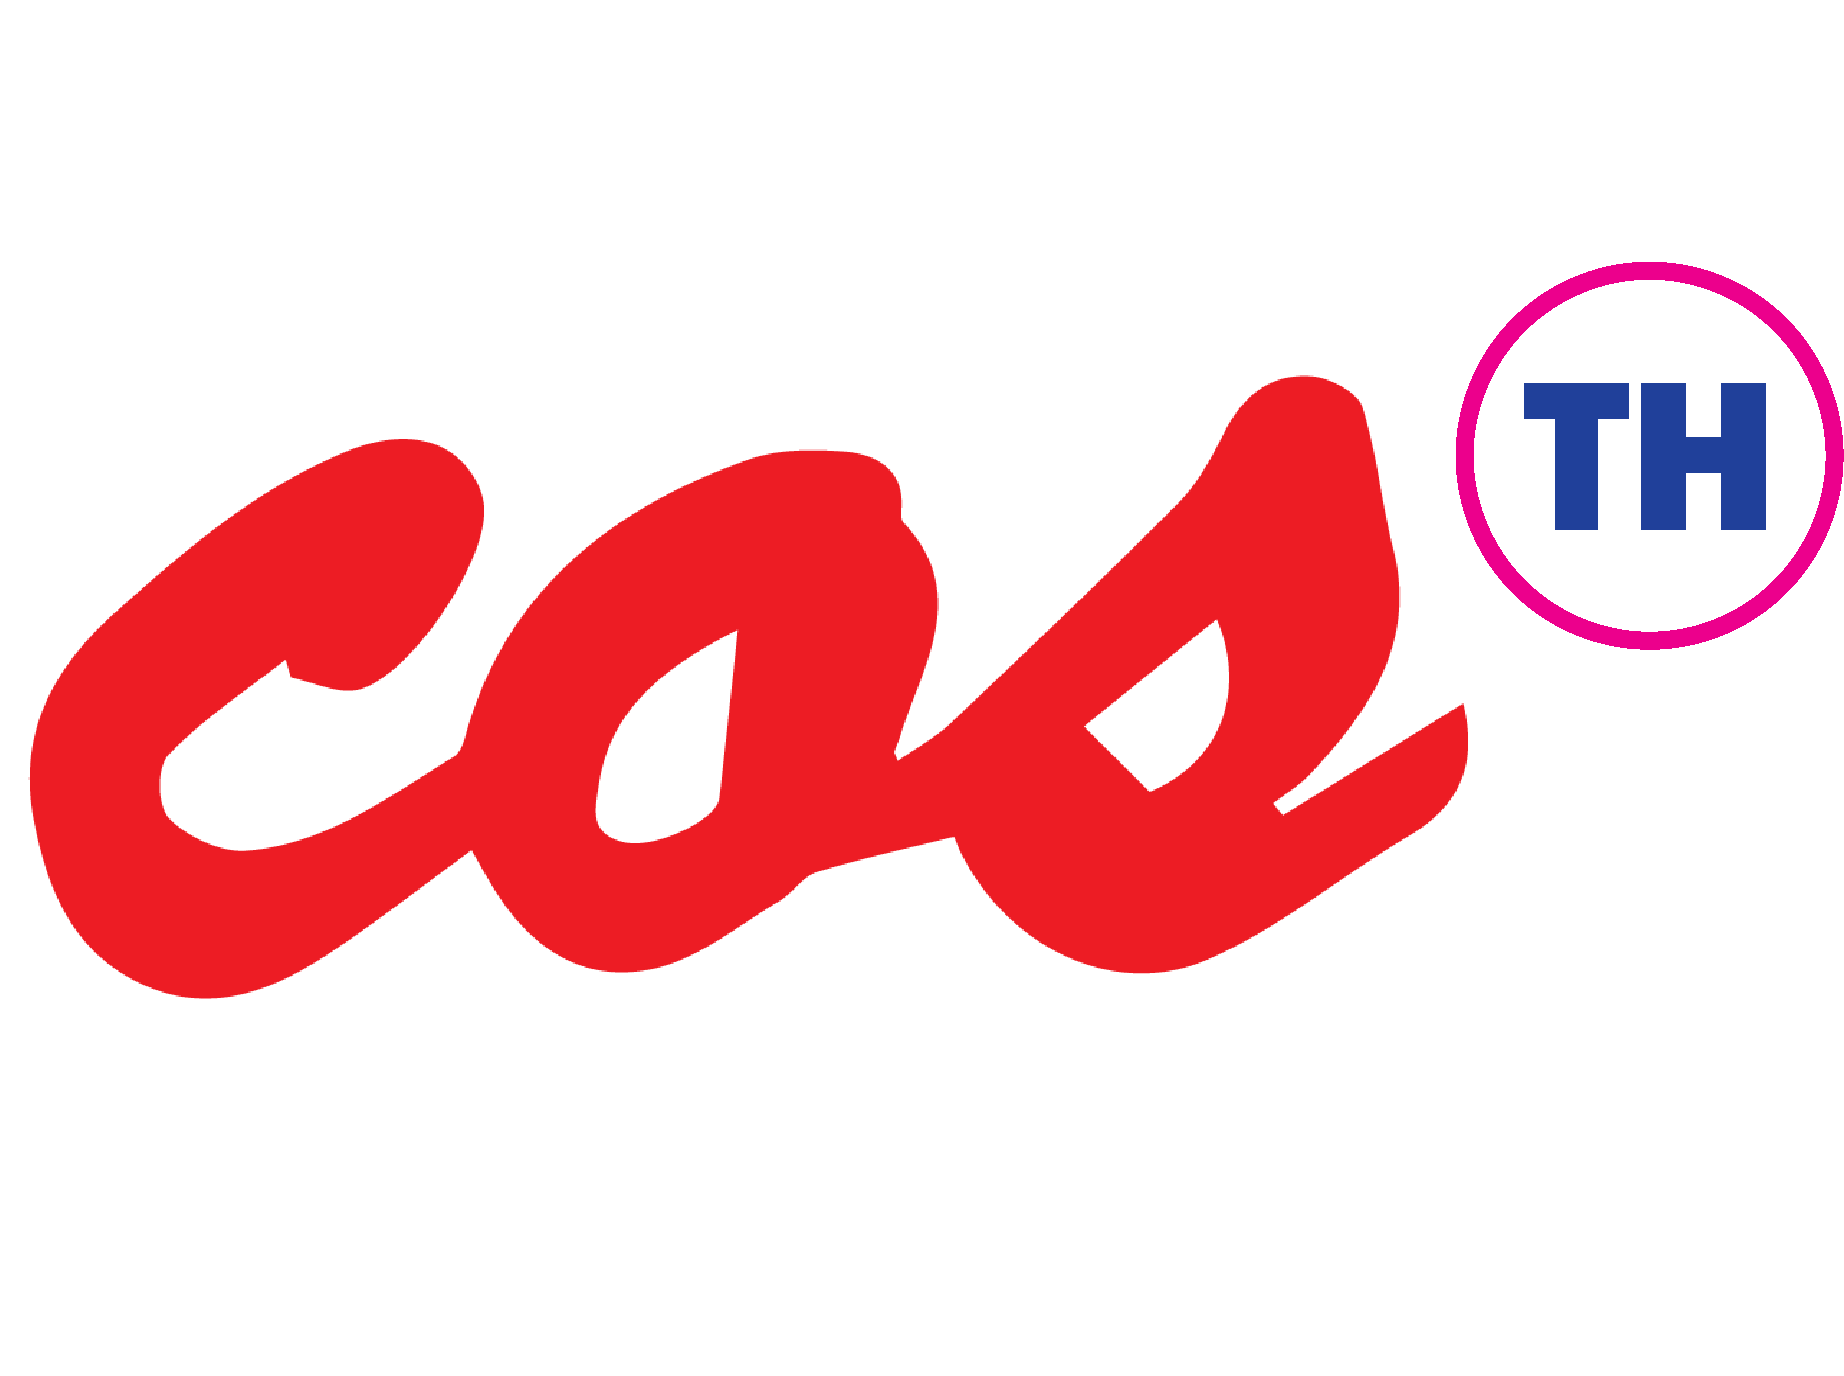 logo โลโก้ บริษัท คอสมอส พรีซีชั่น โมลด์ แอนด์ ดาย (ประเทศไทย) จำกัด   